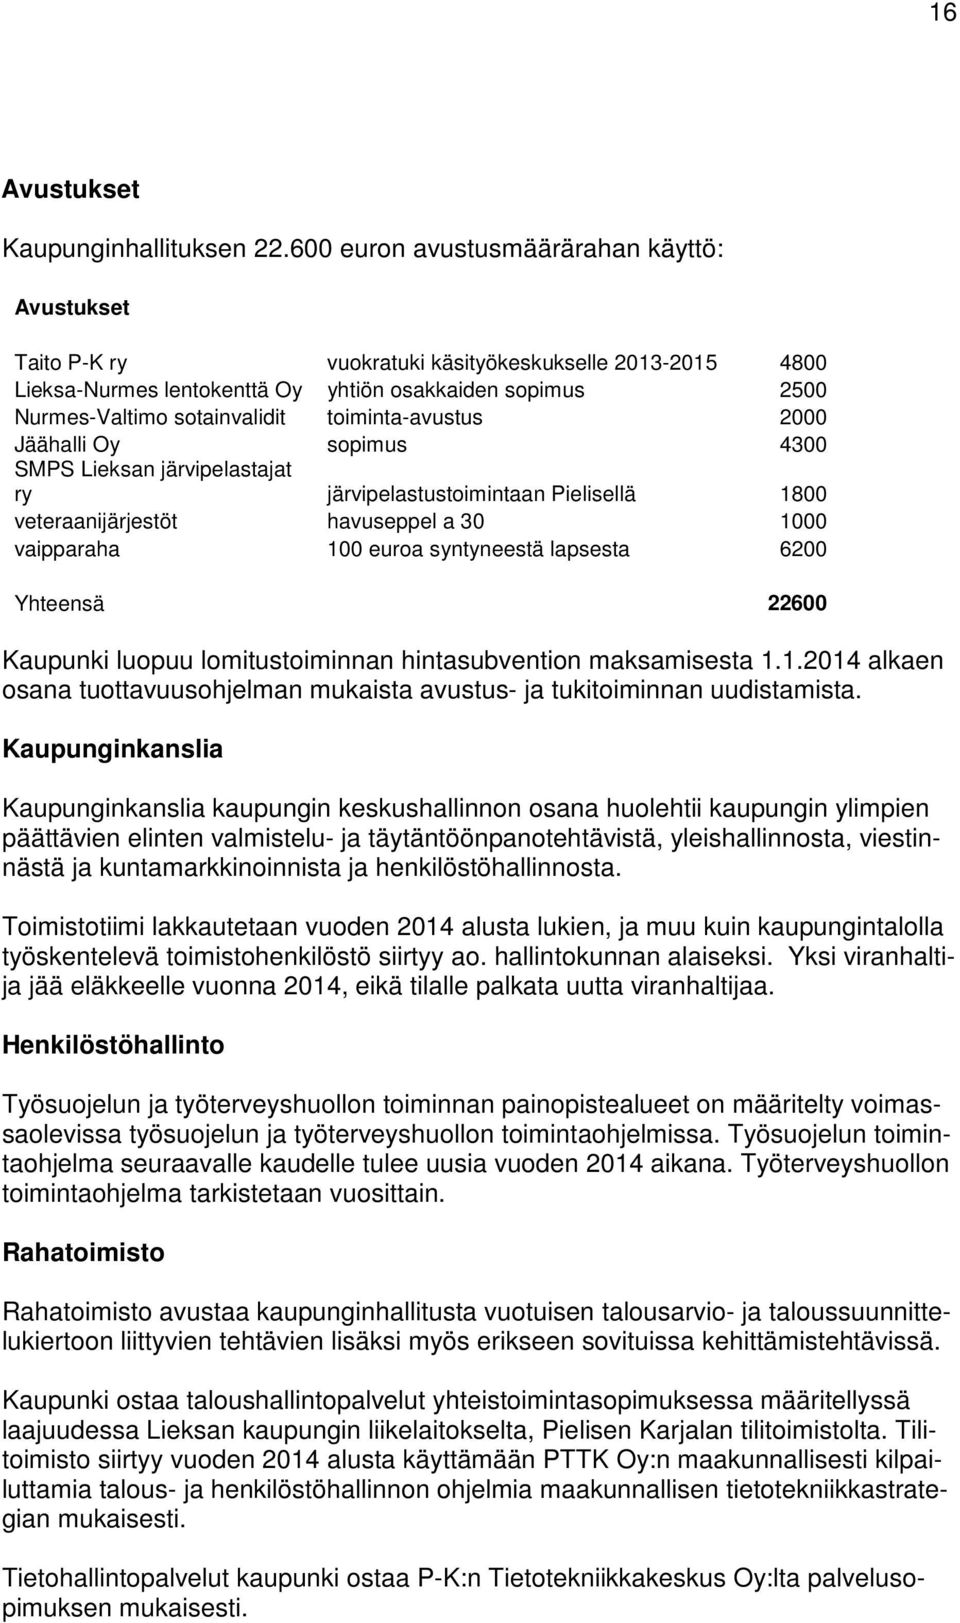 toiminta-avustus 2000 Jäähalli Oy sopimus 4300 SMPS Lieksan järvipelastajat ry järvipelastustoimintaan Pielisellä 1800 veteraanijärjestöt havuseppel a 30 1000 vaipparaha 100 euroa syntyneestä